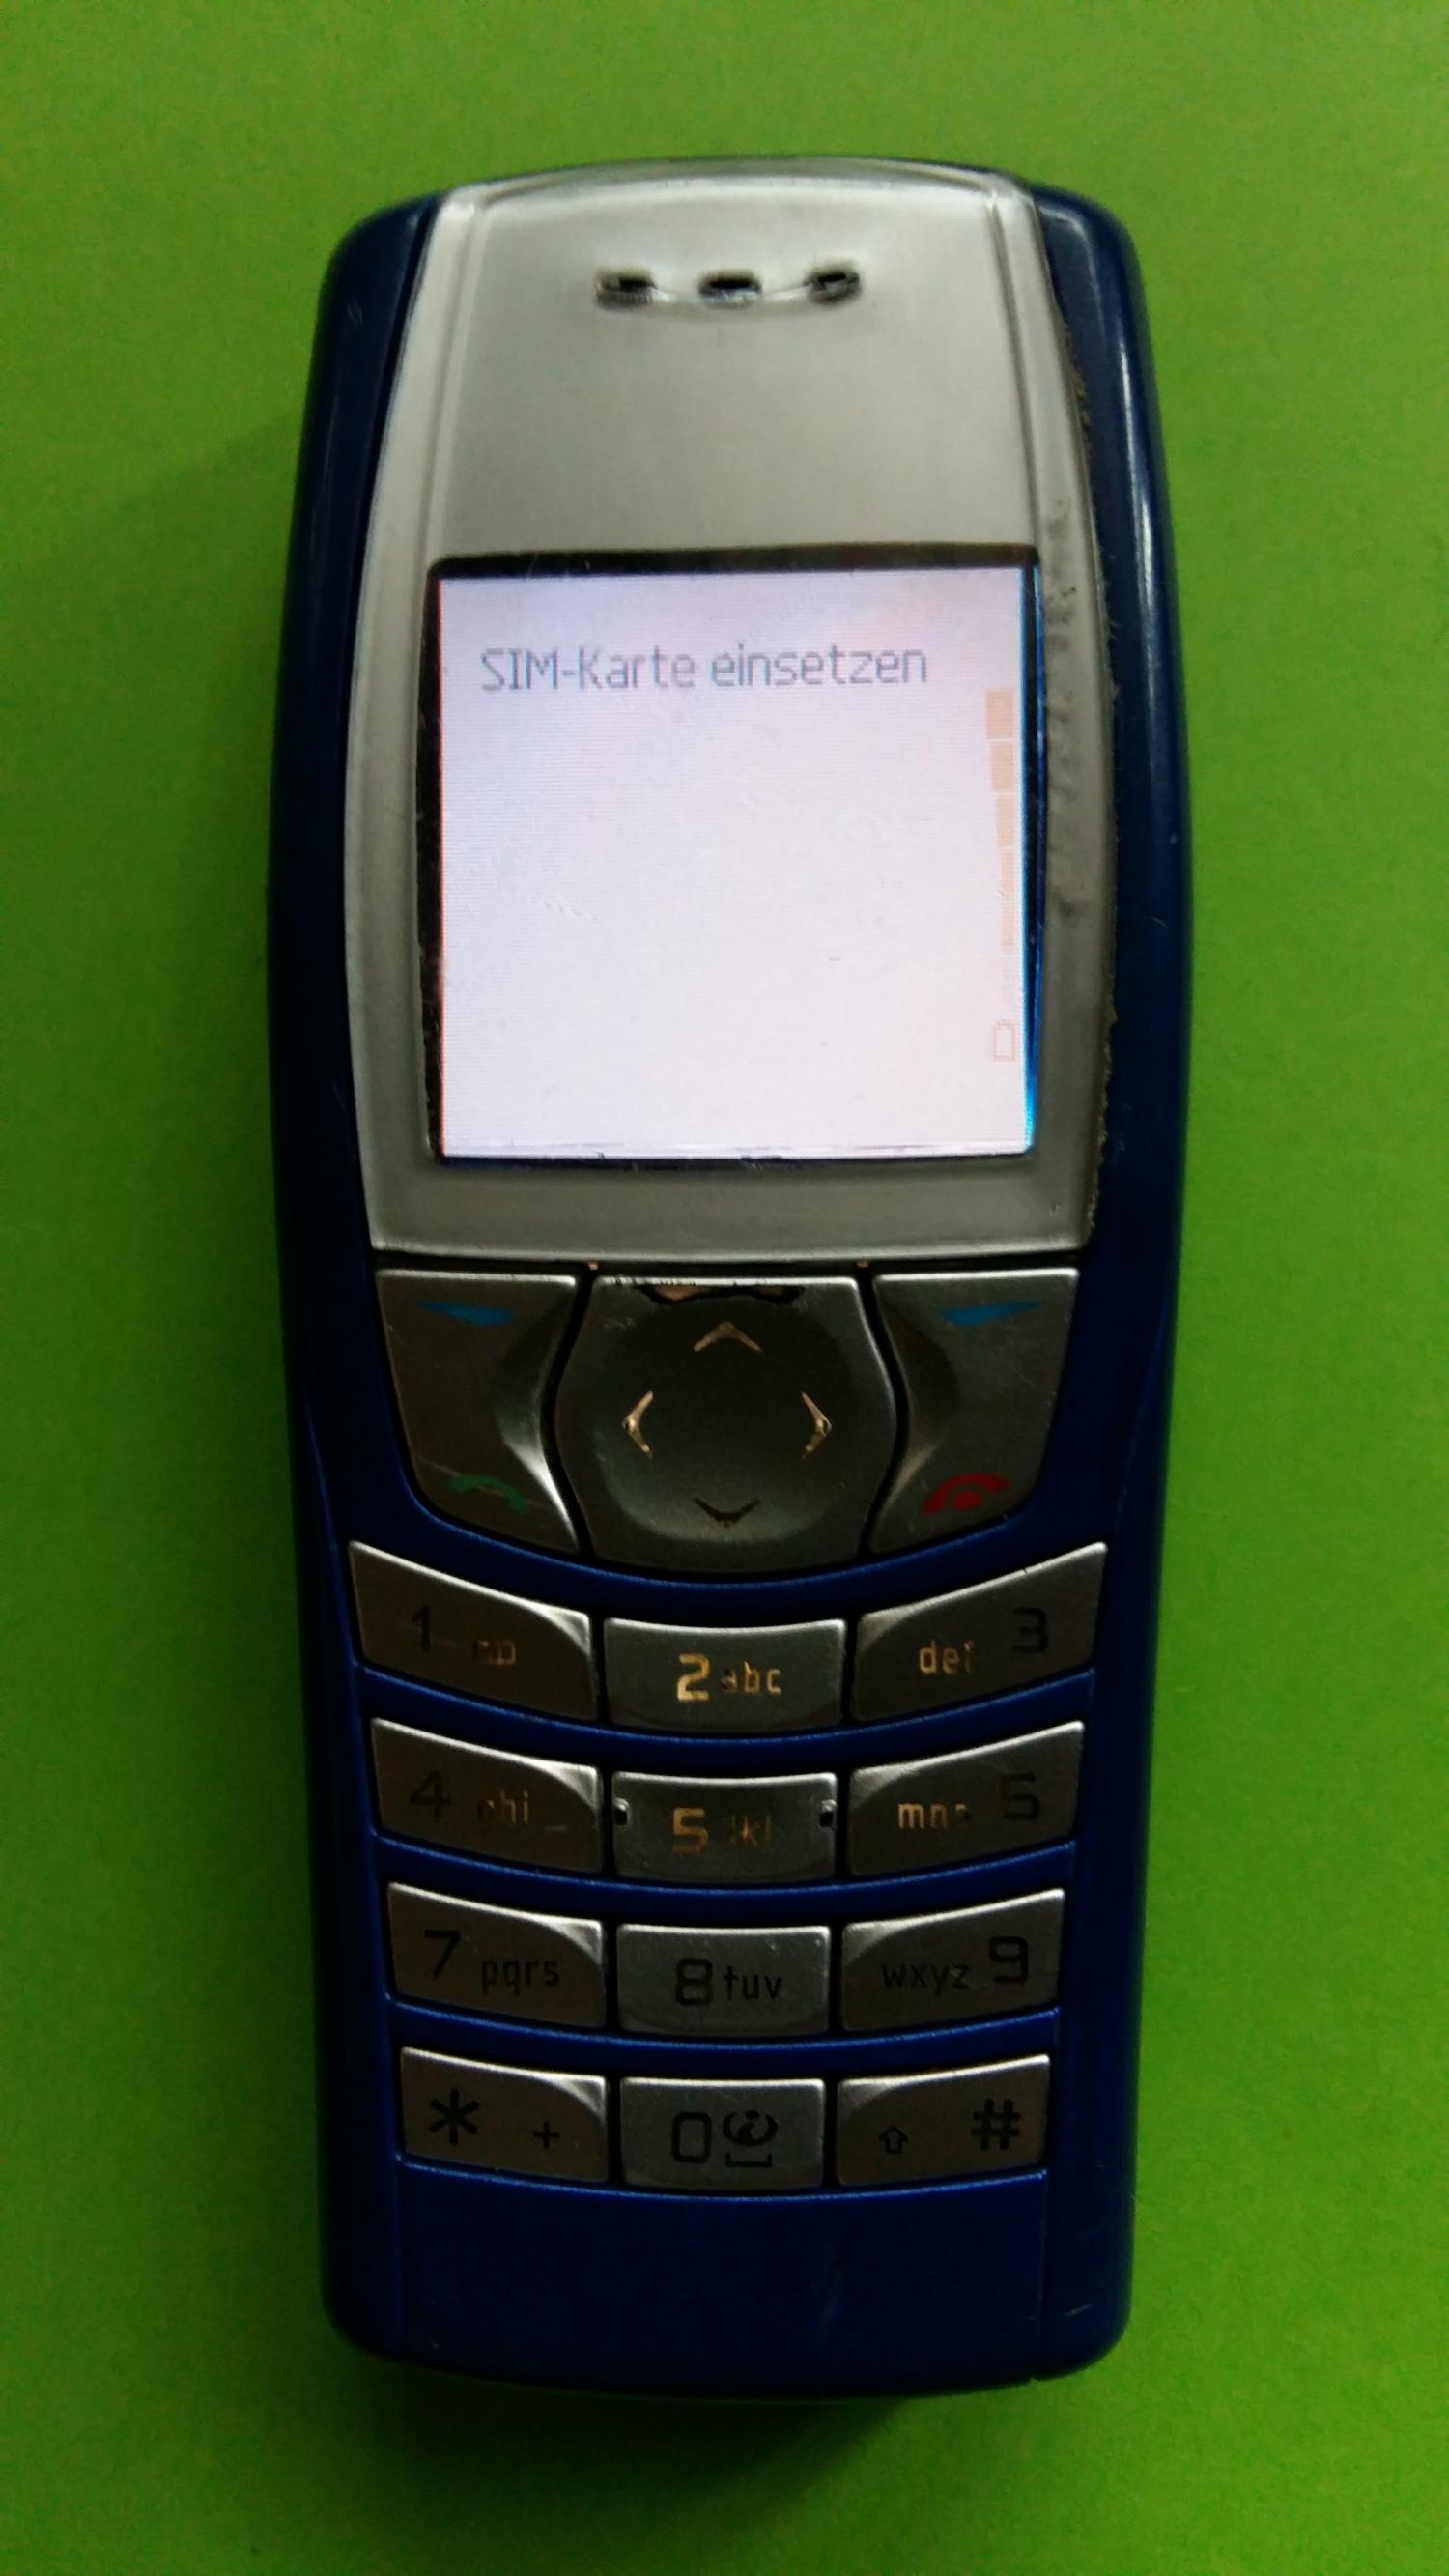 image-7336858-Nokia 6610i (8)1.jpg